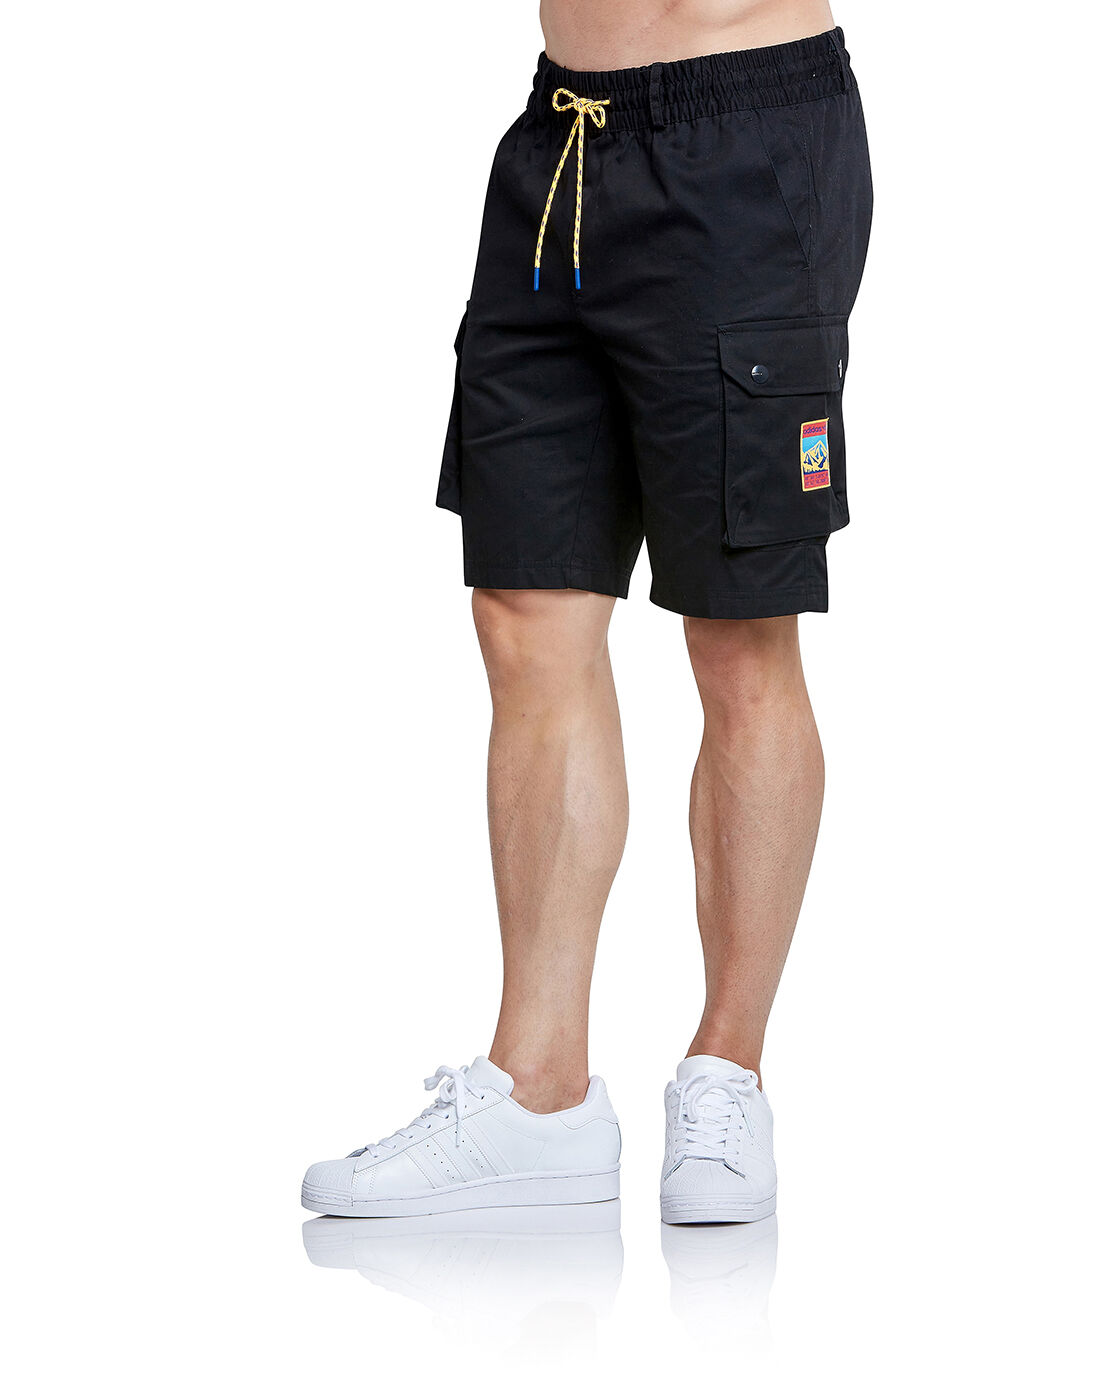 adidas cargo shorts uk